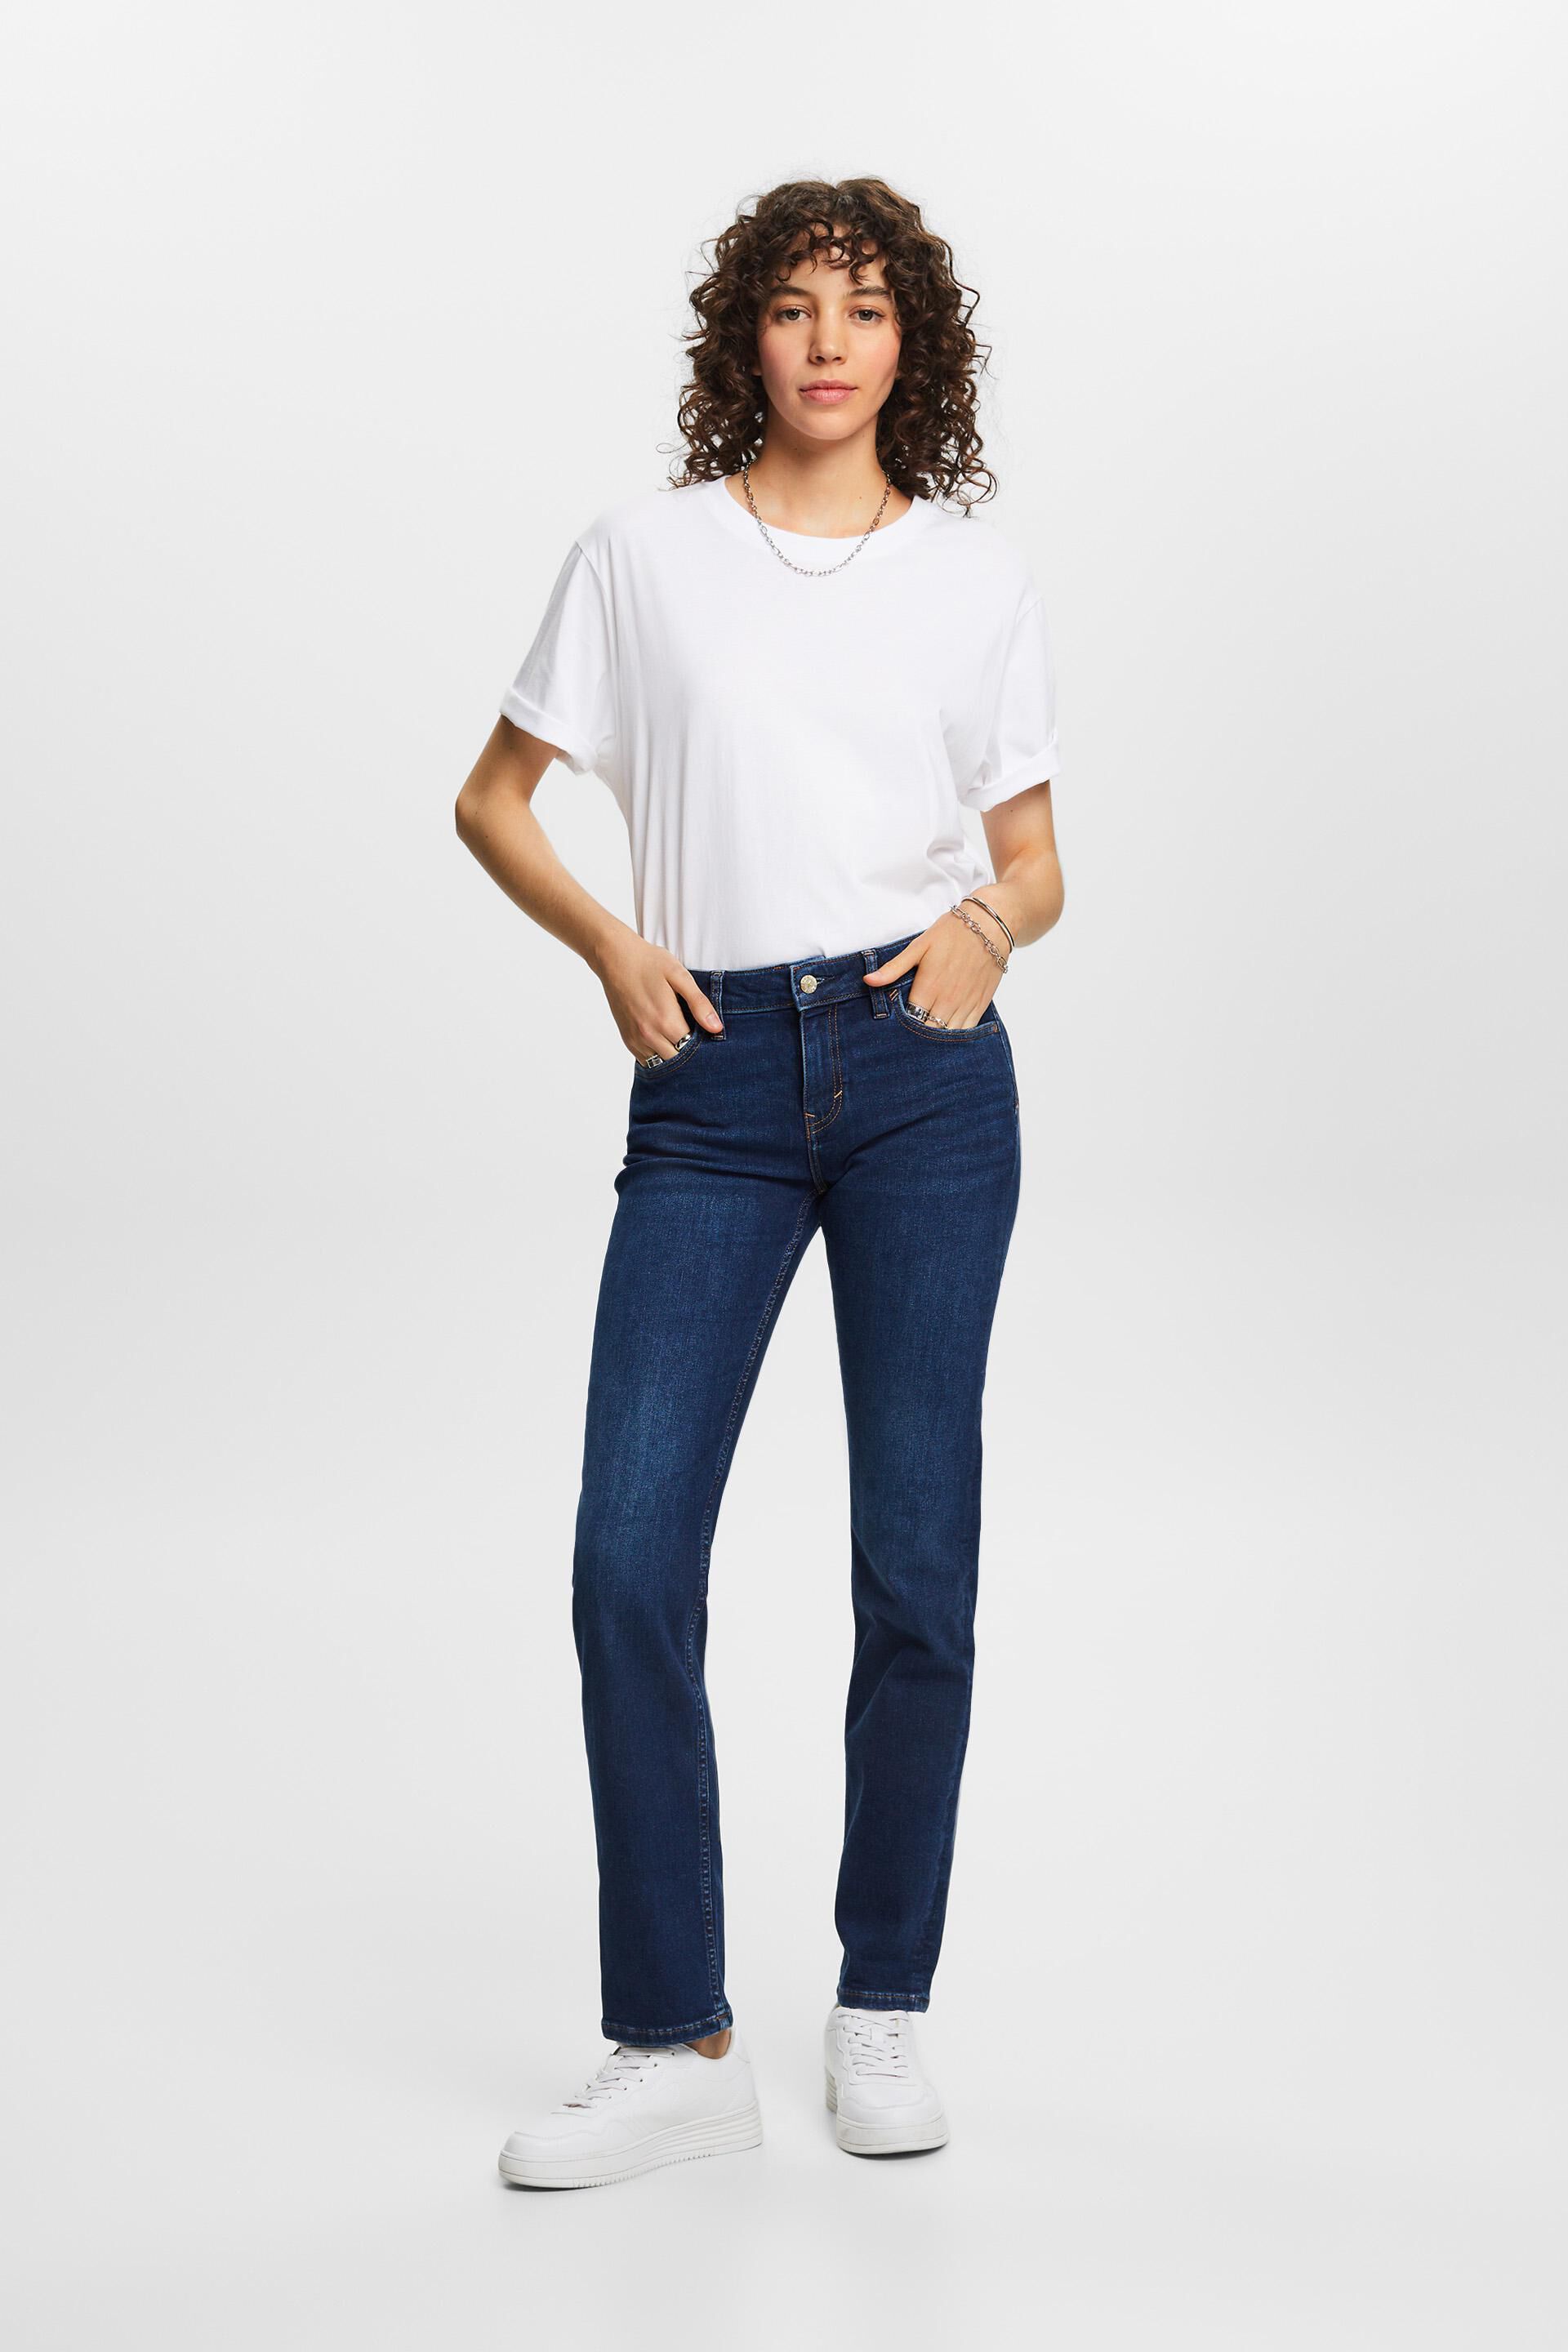 Esprit Damen Stretch-Jeans mit geradem Baumwollmischung Bein